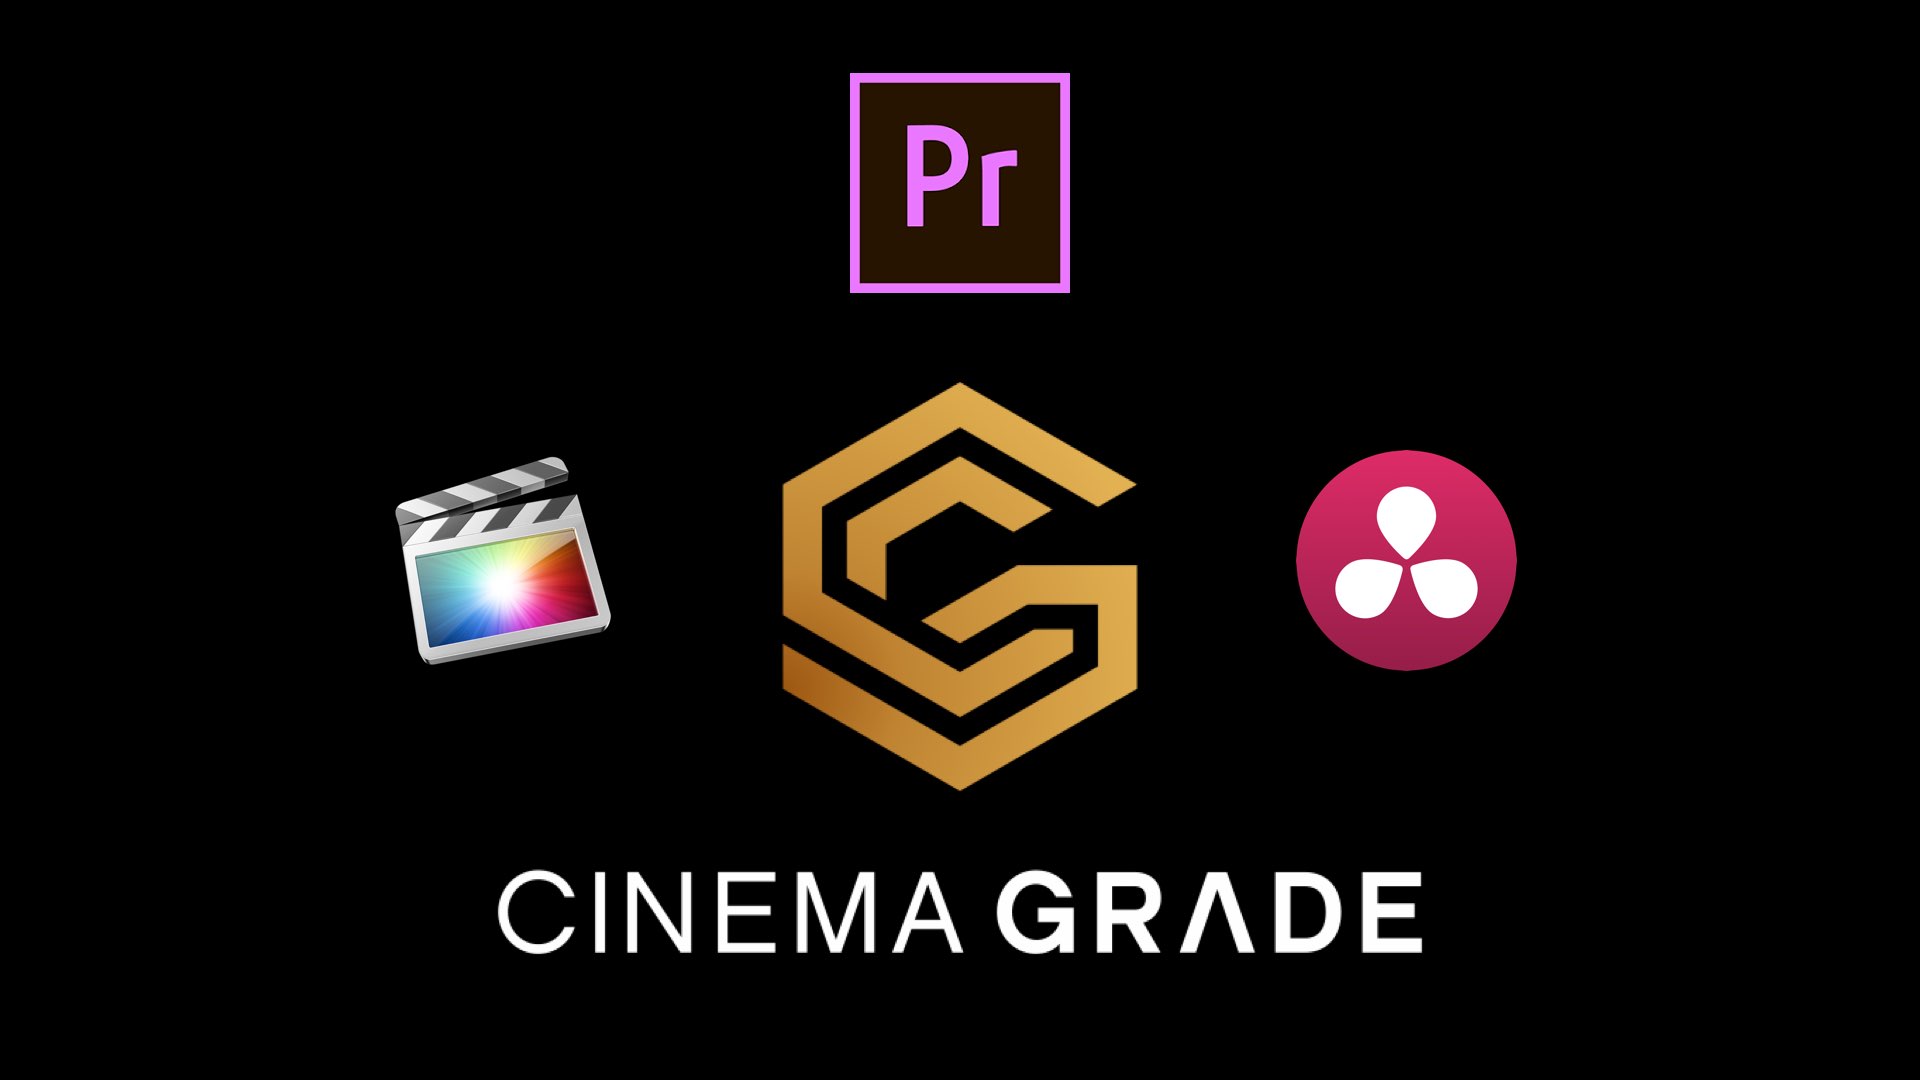 Cinema Grade for FCPX, Premiere Pro and Davinci Resolve